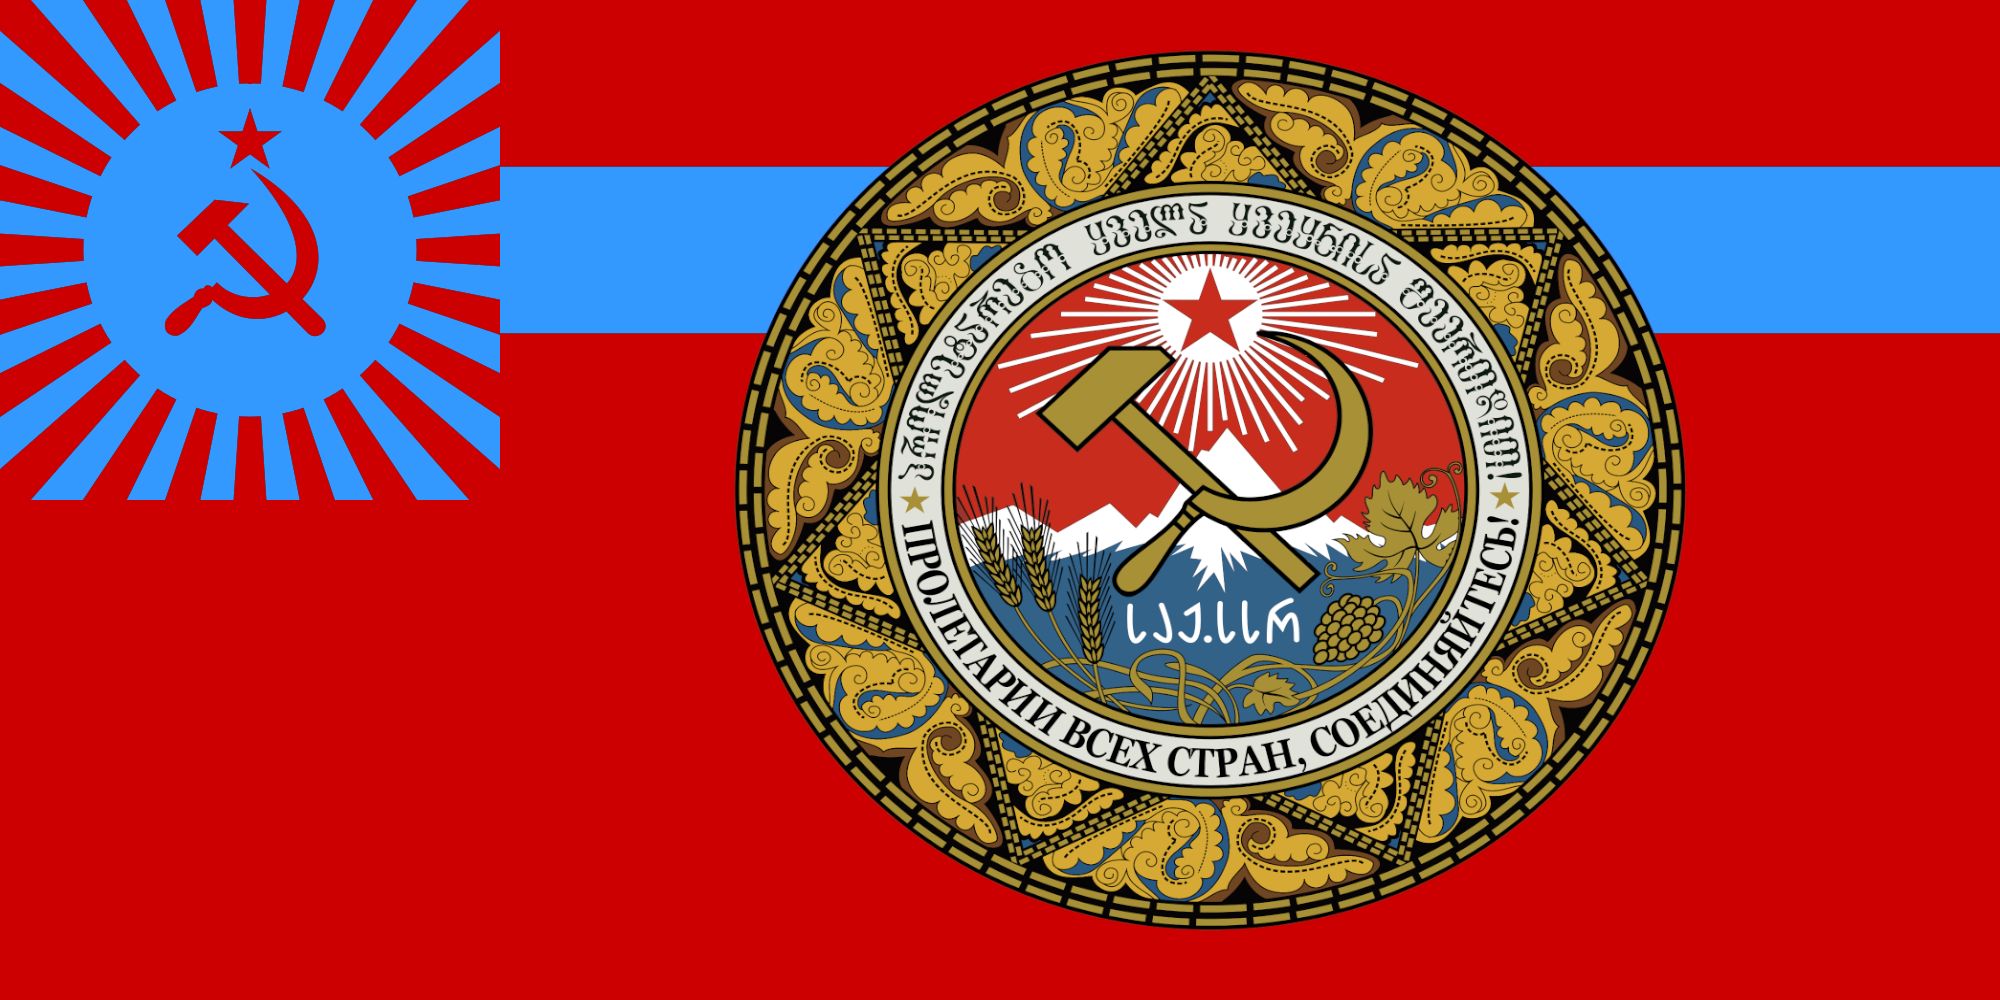 Скачать обои бесплатно Флаги, Разное, Флаг Грузинской Советской Социалистической Республики картинка на рабочий стол ПК